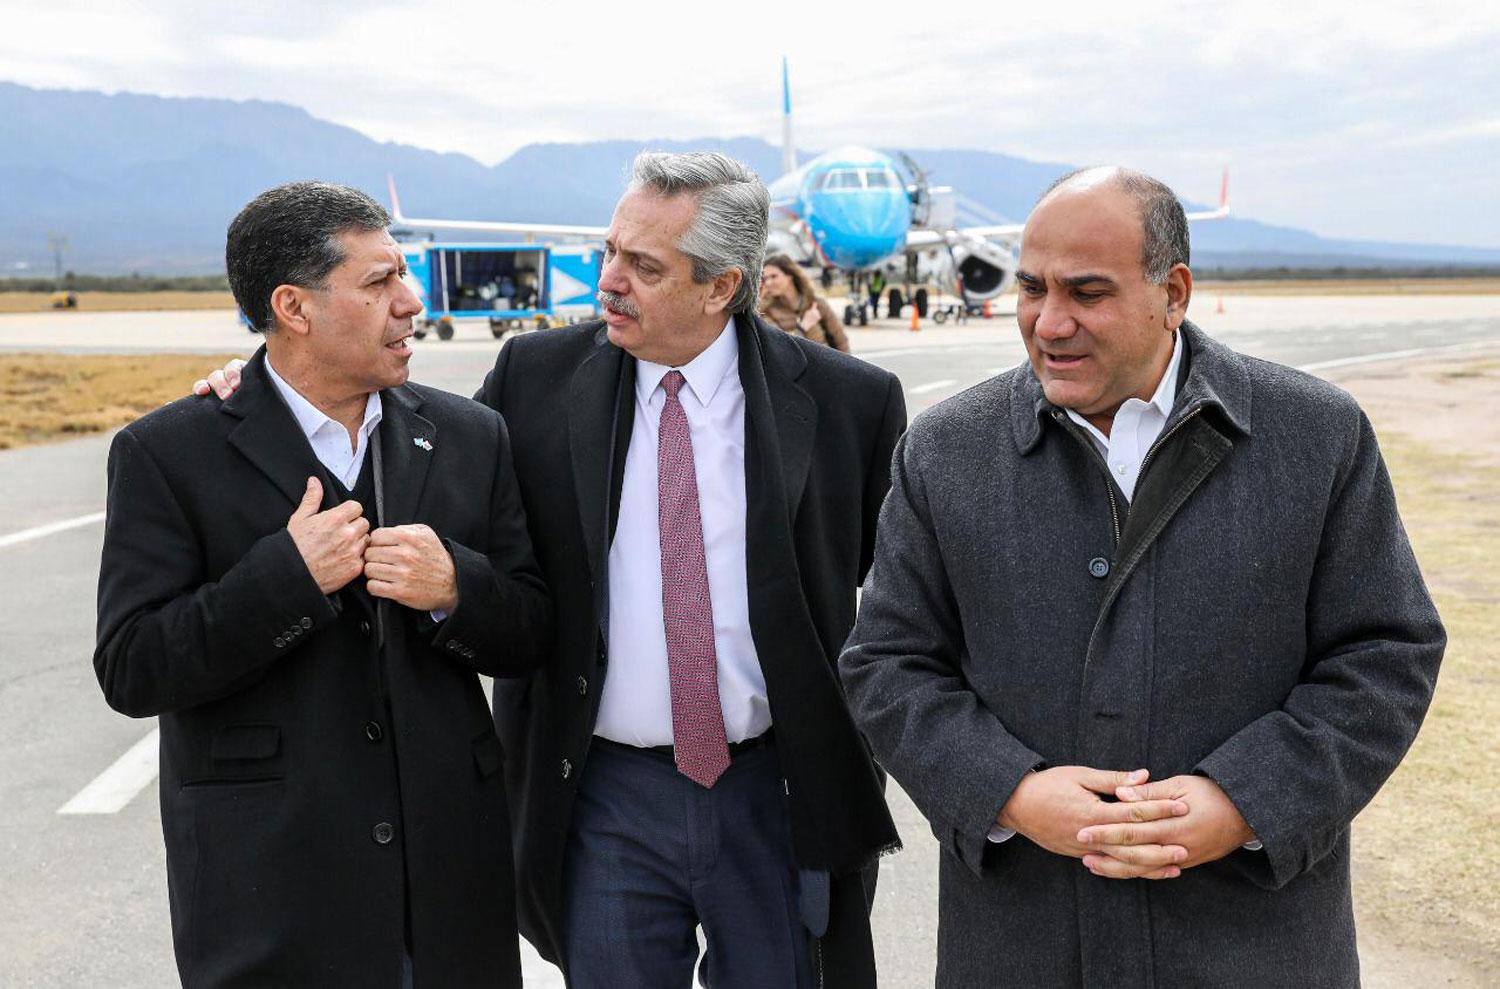 RECEPCIÓN. El gobernador de La Rioja, Sergio Casas, charla con Fernández y Manzur.